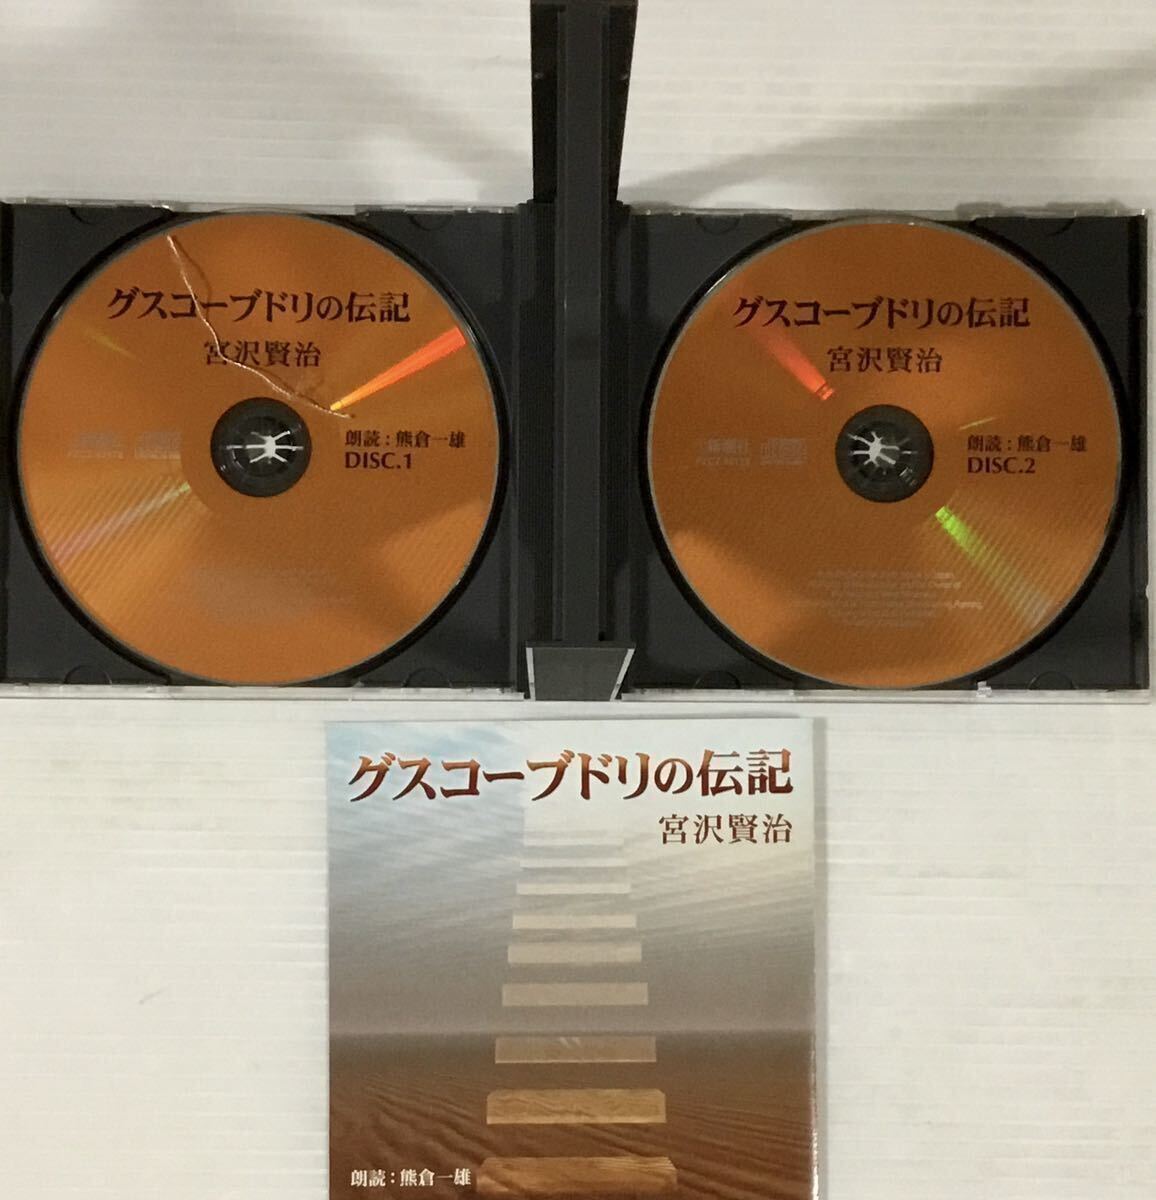 ☆ 朗読CD グスコーブドリの伝記 宮沢賢治 熊倉一雄 CD2枚組 新潮社